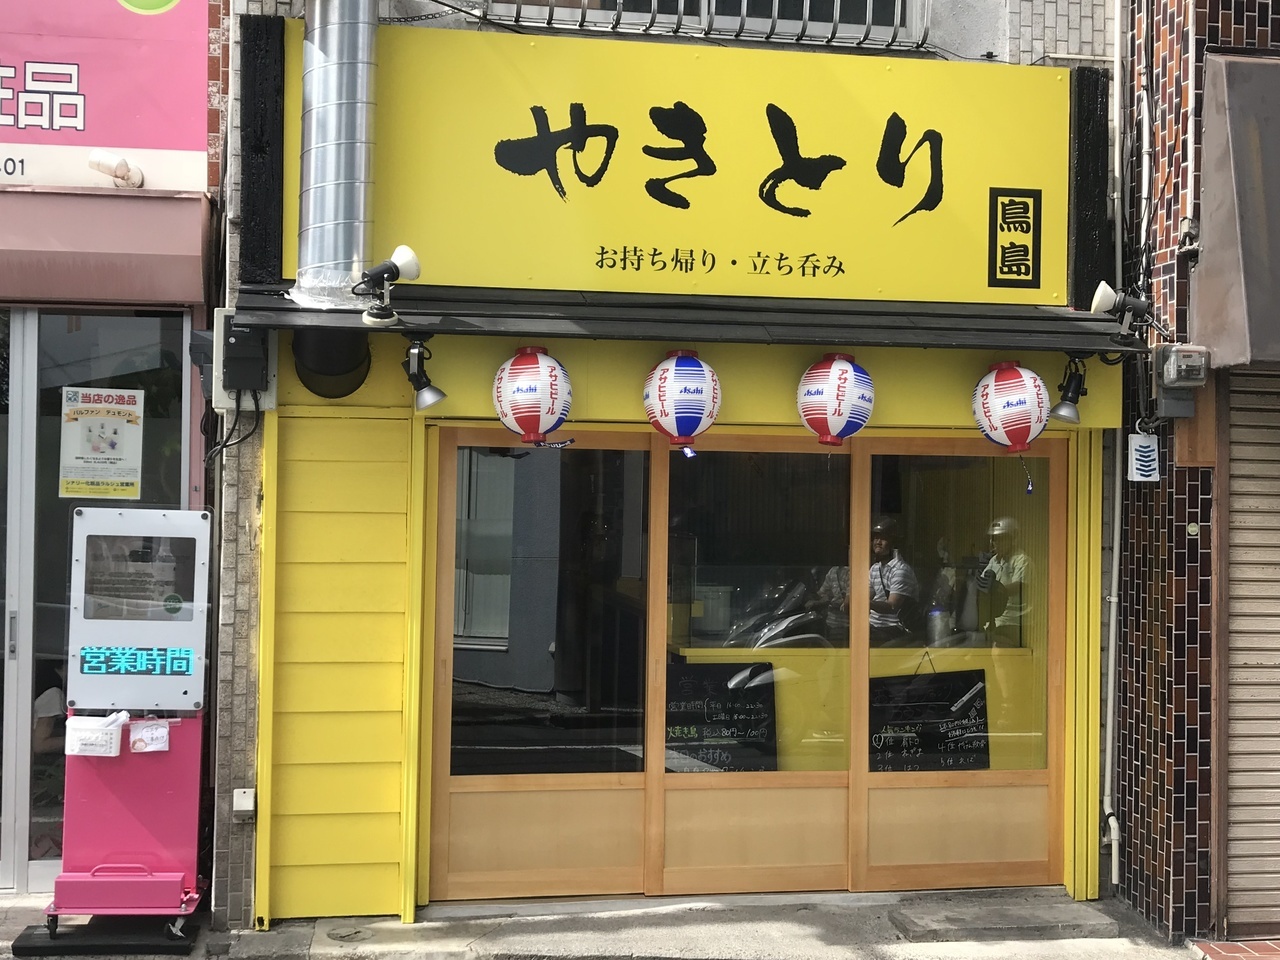 小平市花小金井の工務店リフォームワークスが手がけた店舗改装工事です。